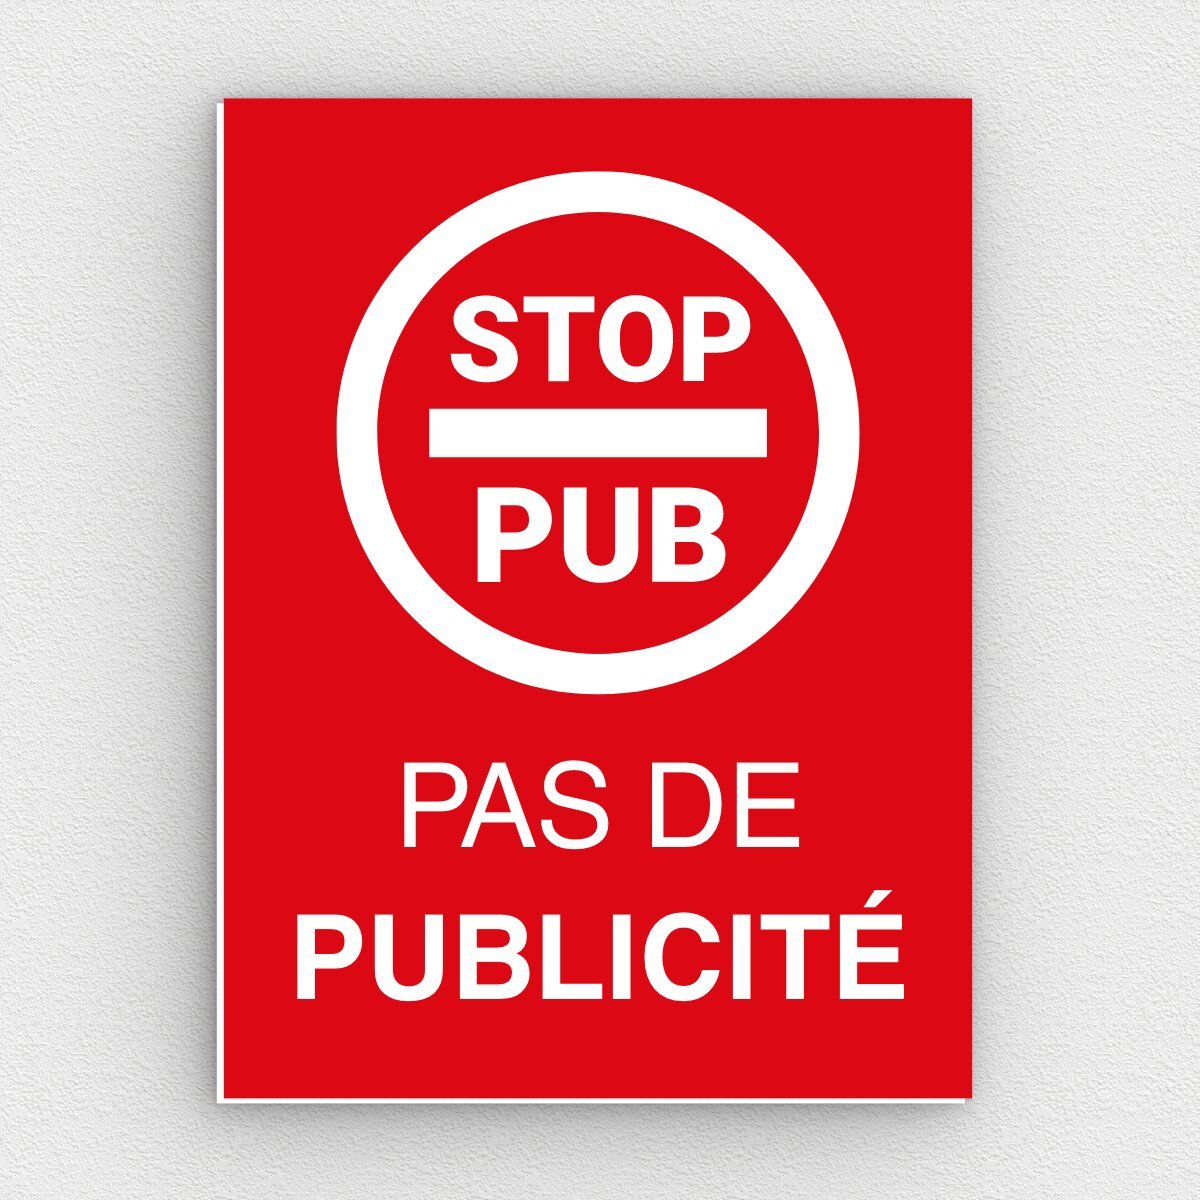 Le Stop pub est-il efficace ?